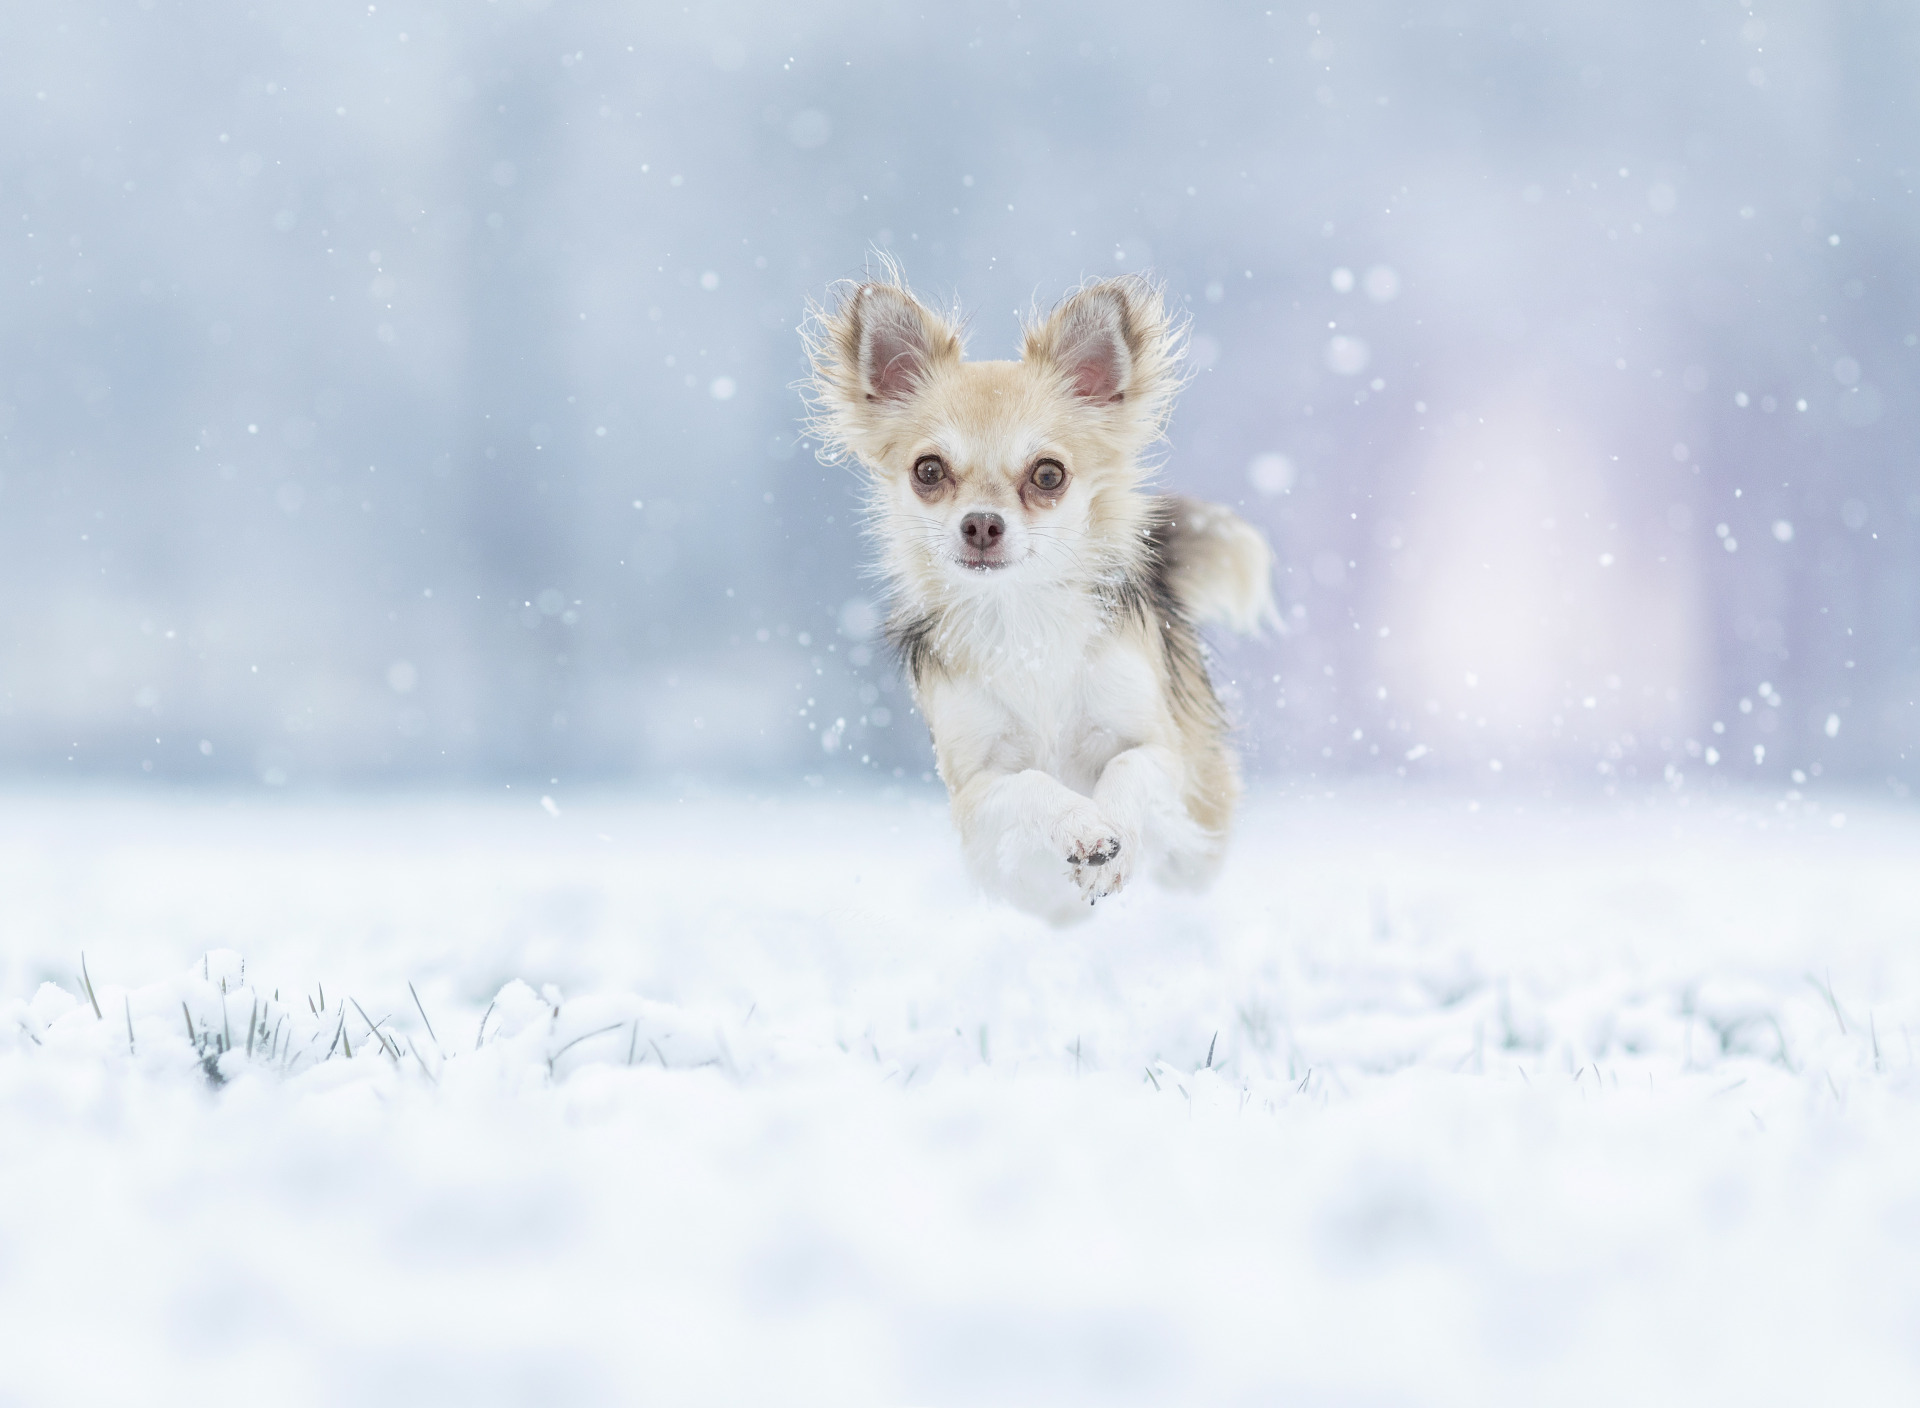 Descarga gratuita de fondo de pantalla para móvil de Animales, Invierno, Nieve, Perro, Correr, Chihuahua.